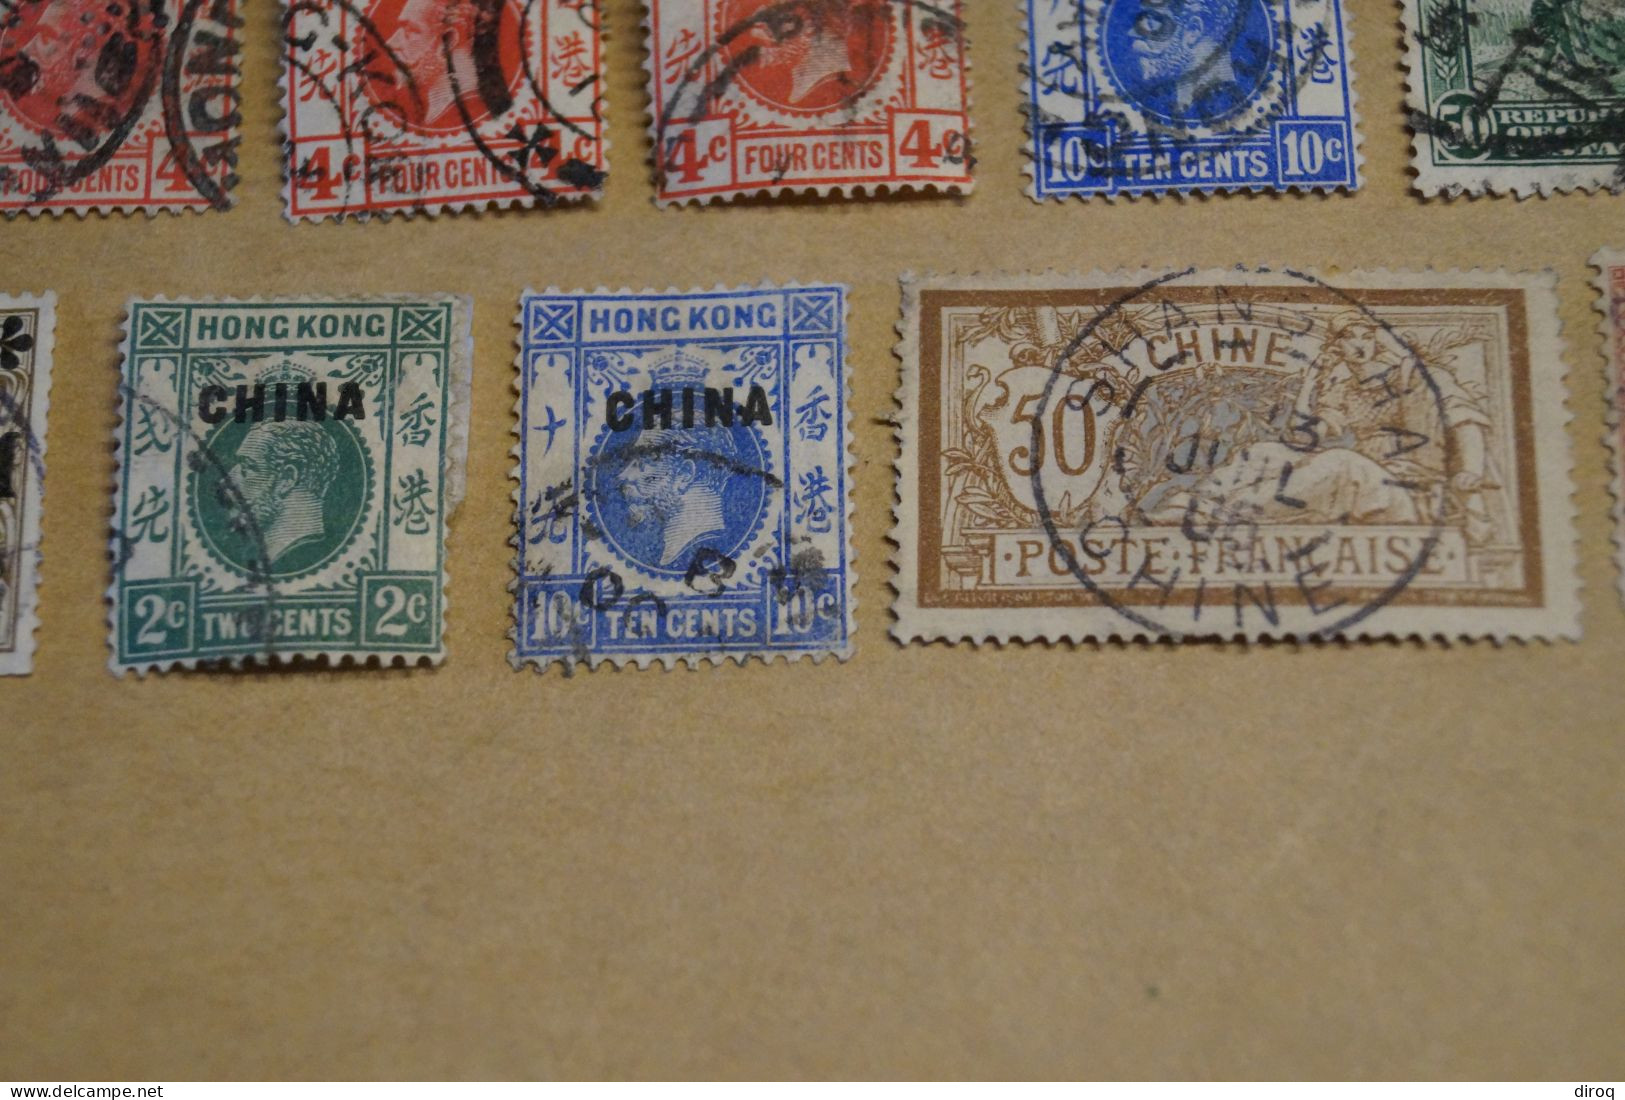 Chine,Chines,lot de 21 timbres oblitérés,empire et colonies pour collection,collector